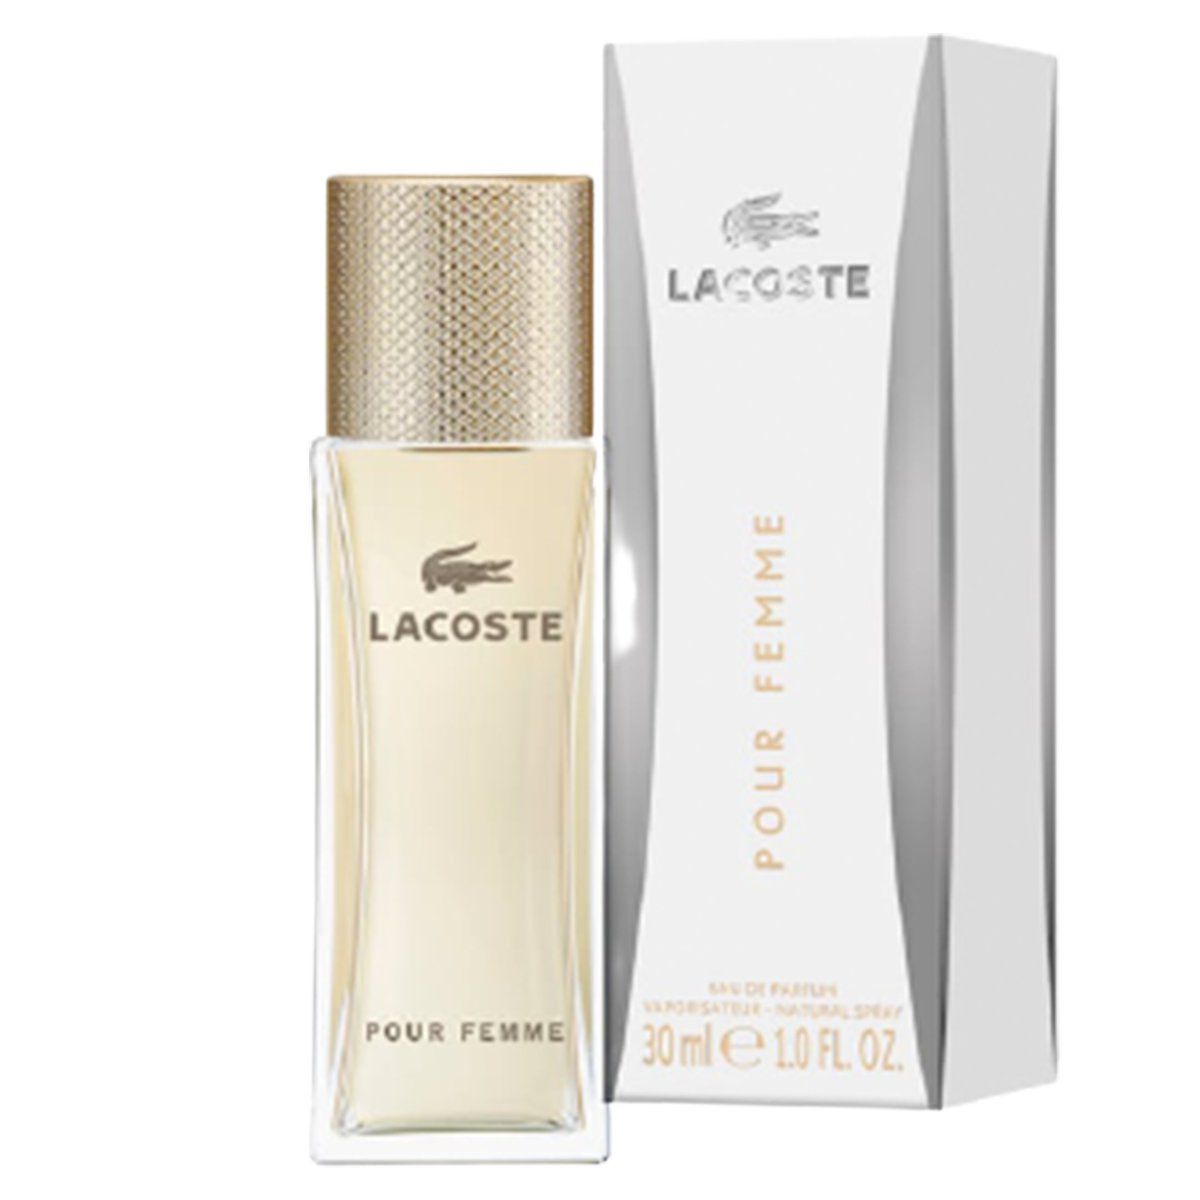  Lacoste Pour Femme Eau de Parfum for woman 